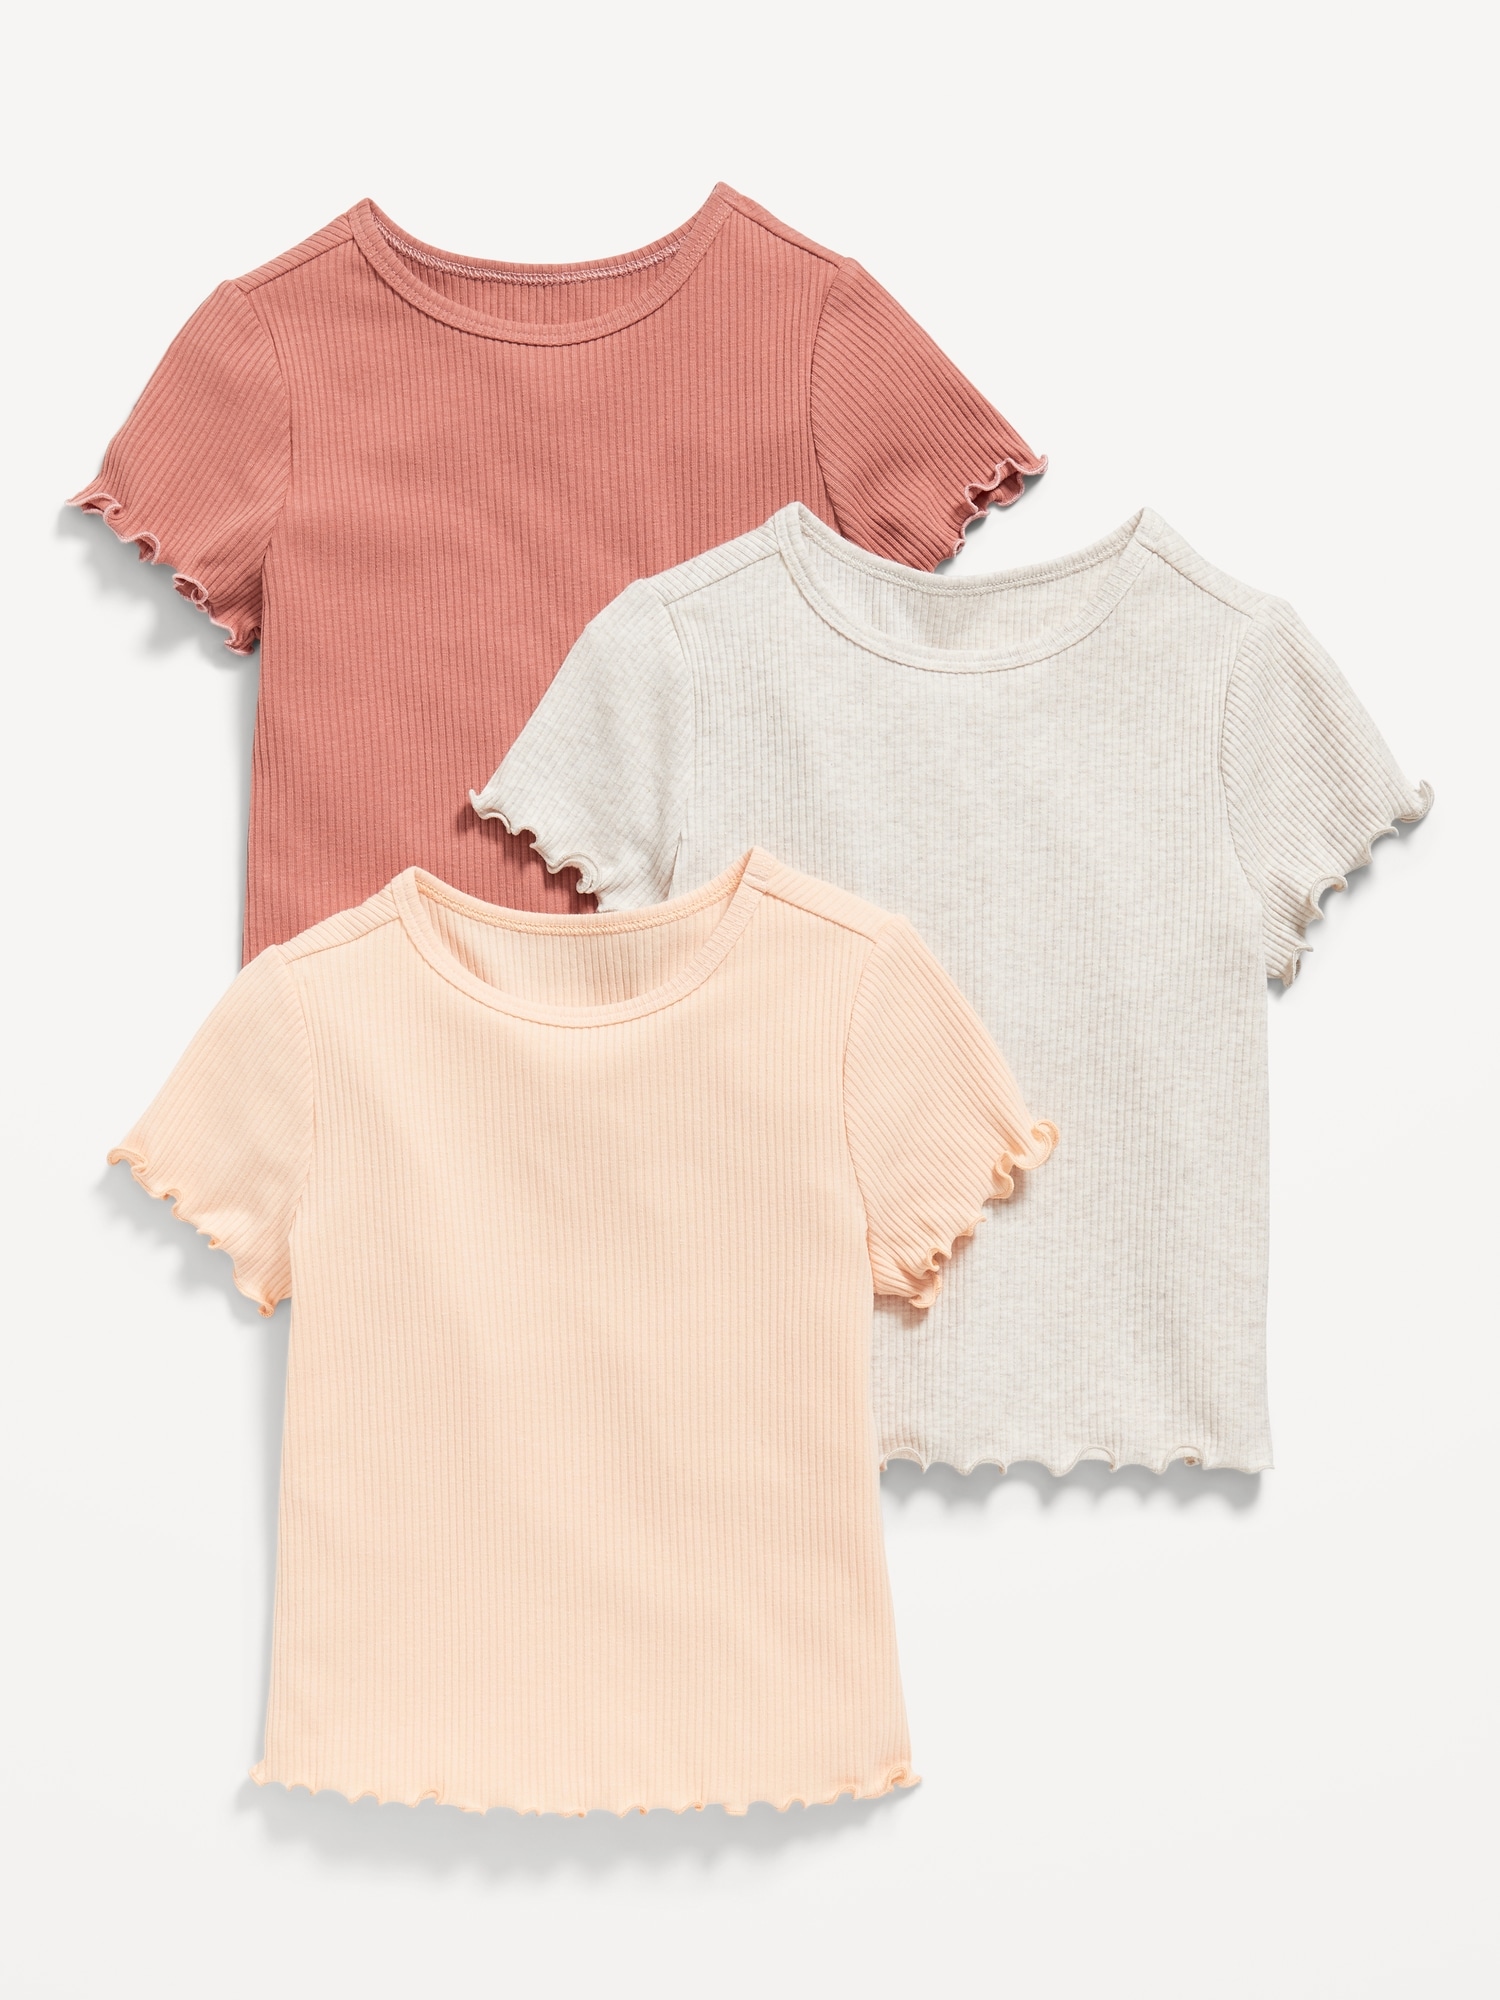 Toddler Girls 3-Pack Old T-Shirt Short-Sleeve Navy Lettuce-Edge | for